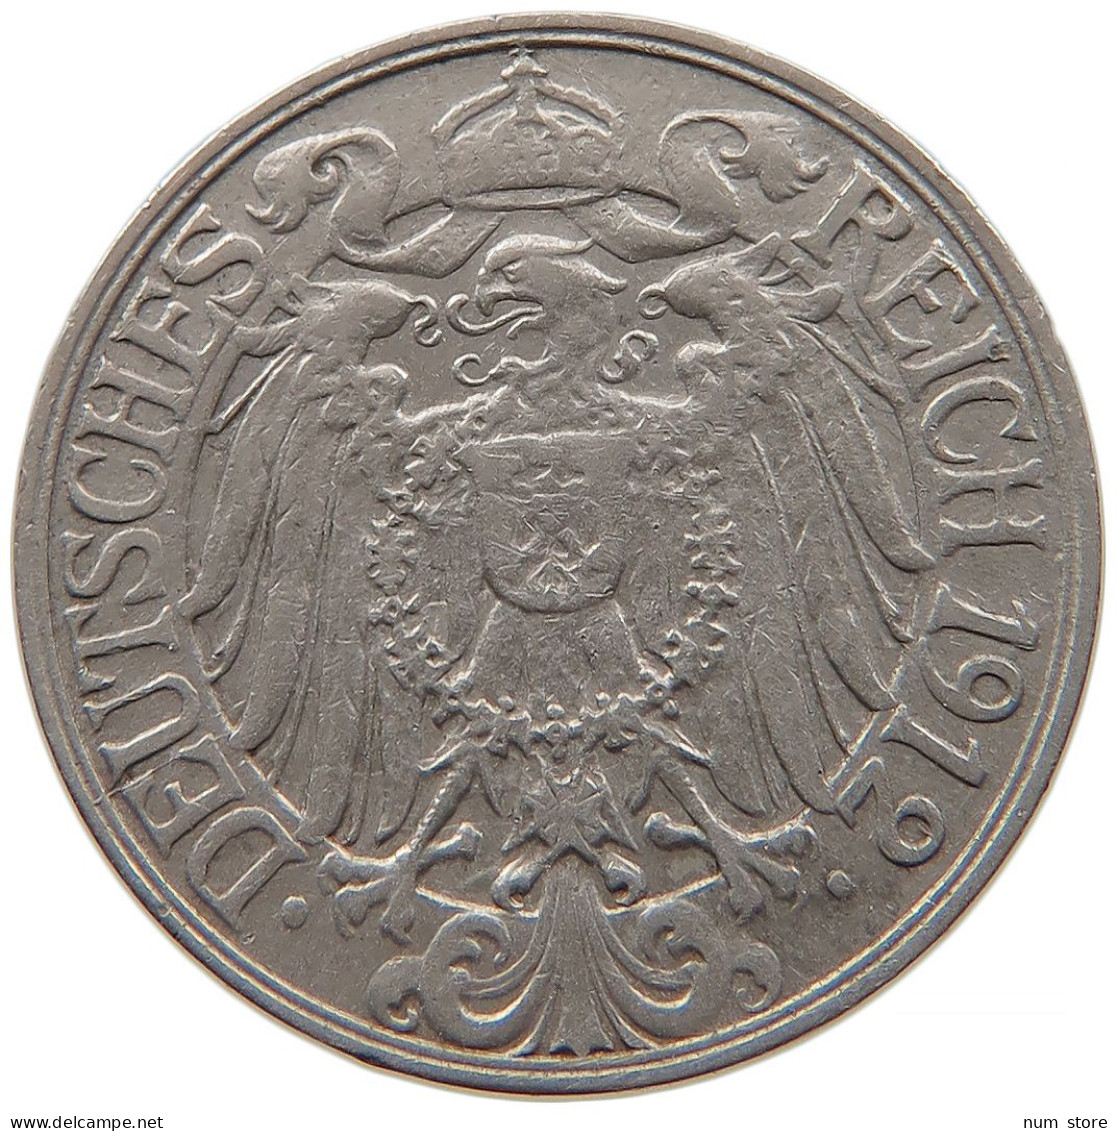 GERMANY EMPIRE 25 PFENNIG 1912 F #t032 0629 - 25 Pfennig